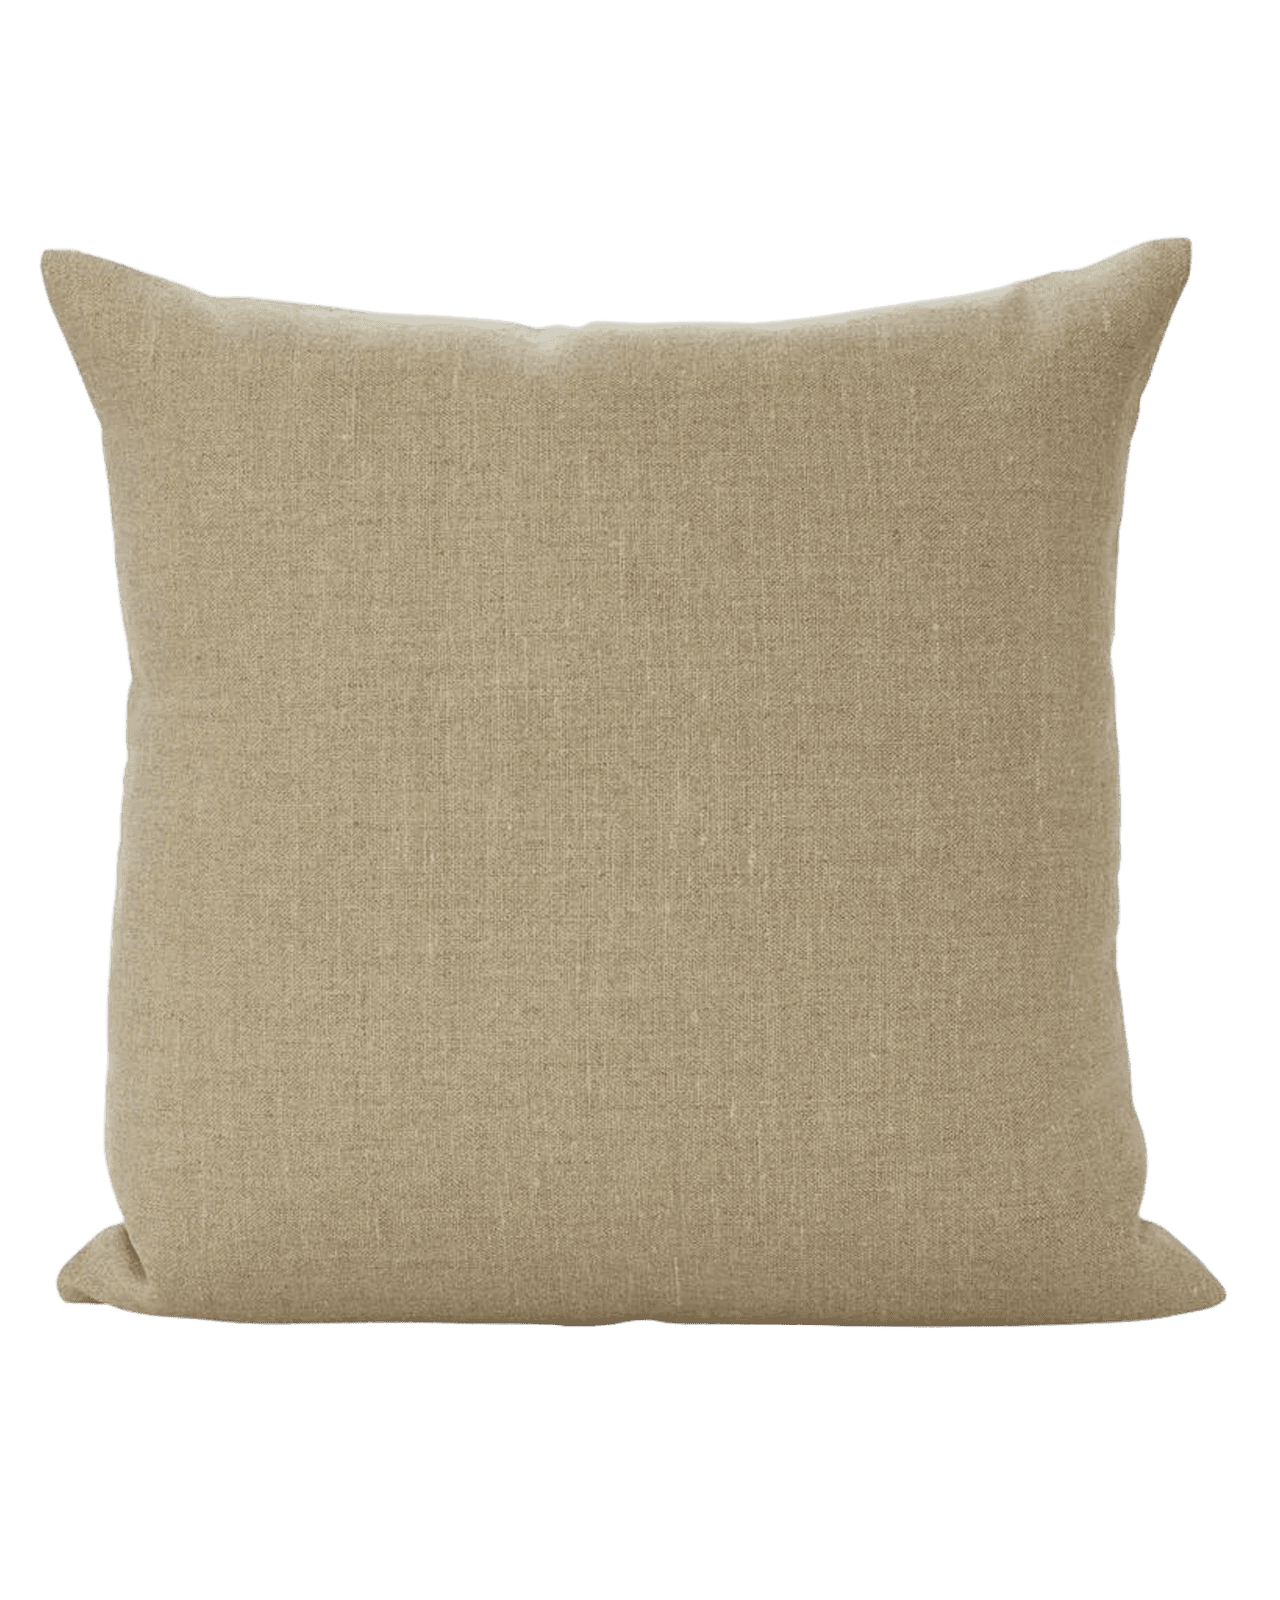 Stone Plume Pillows